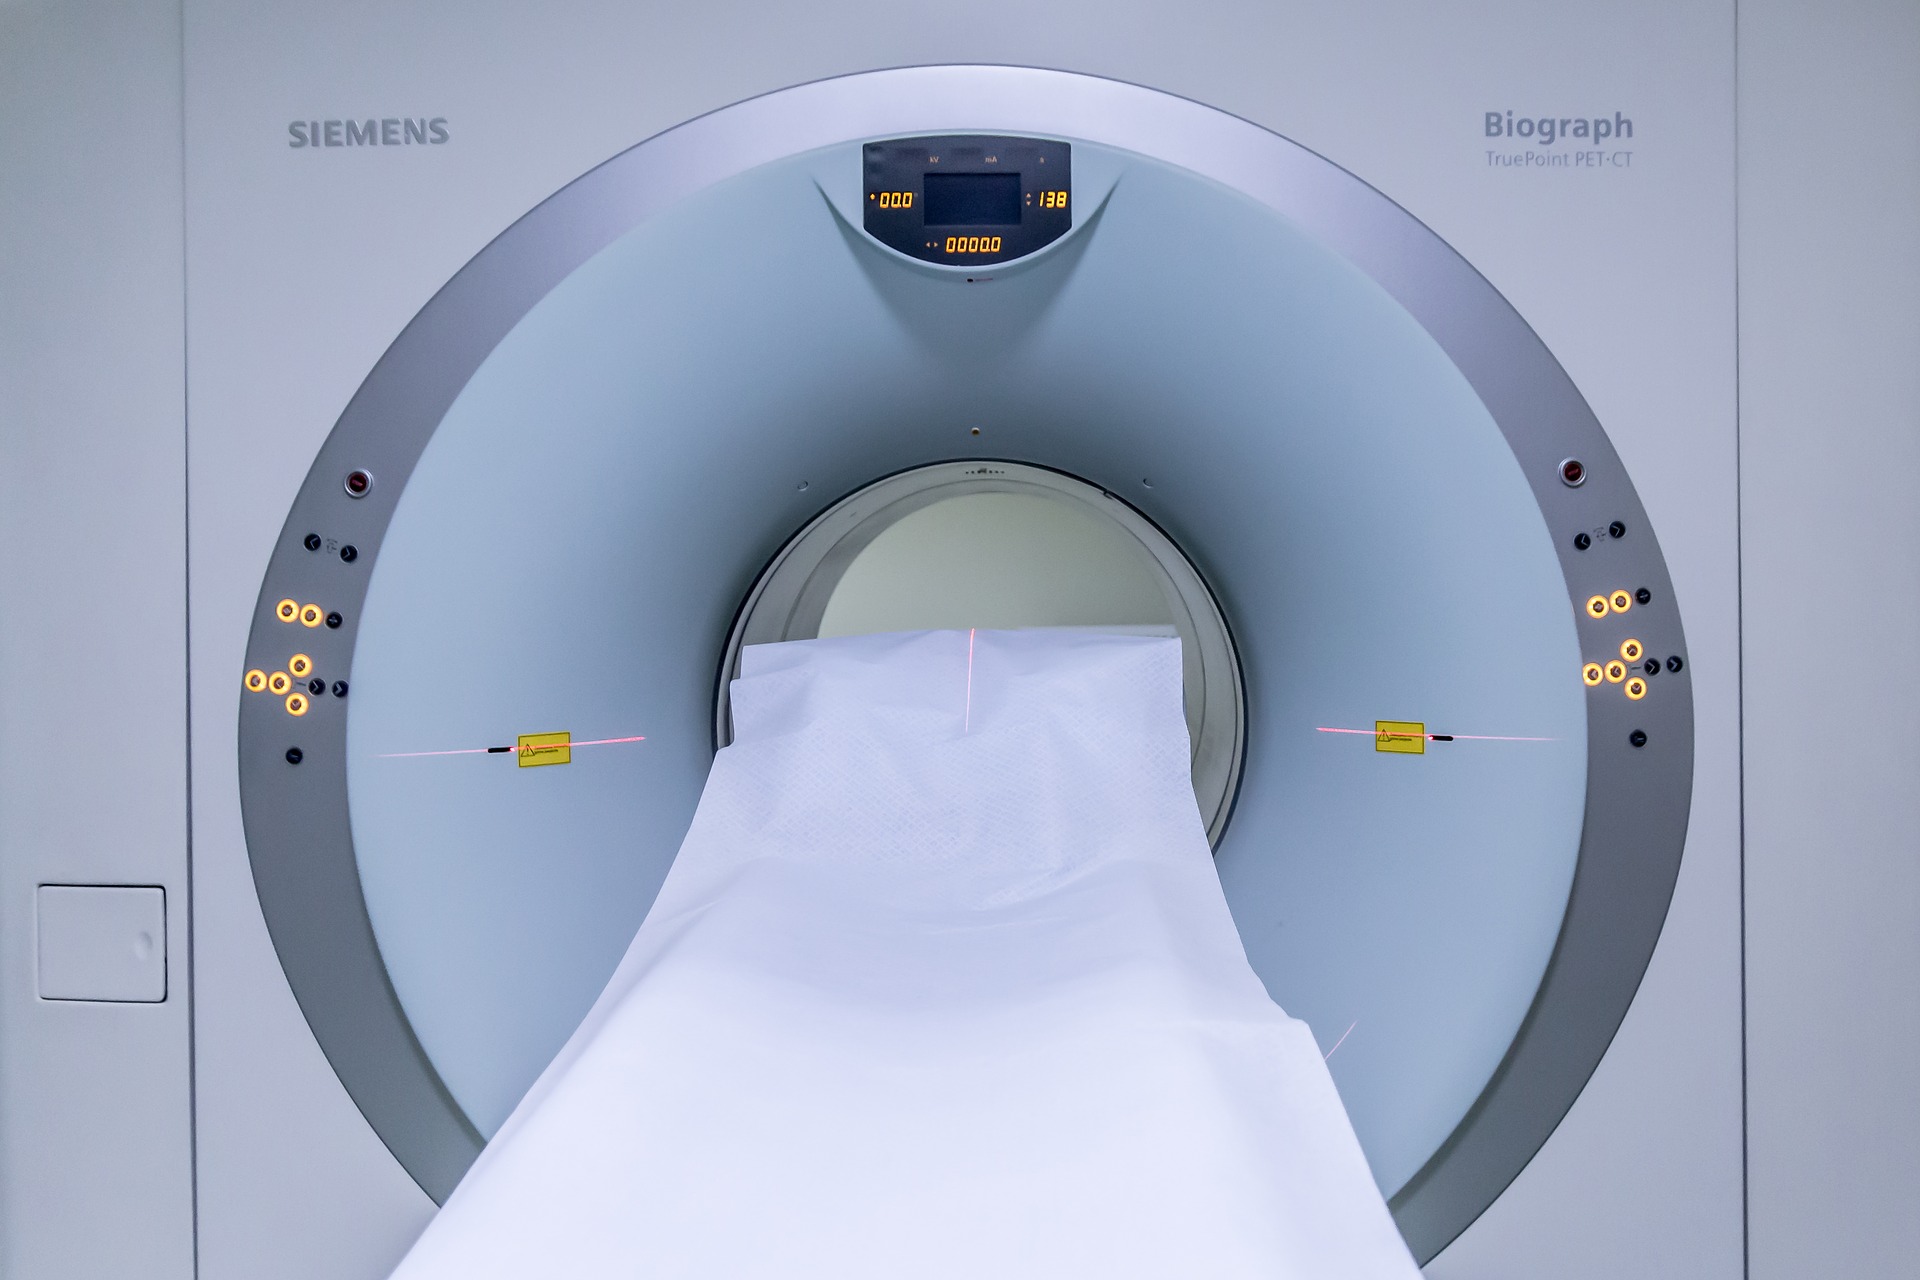 Radioterapia, aggiornamento da oltre 1 milione di euro